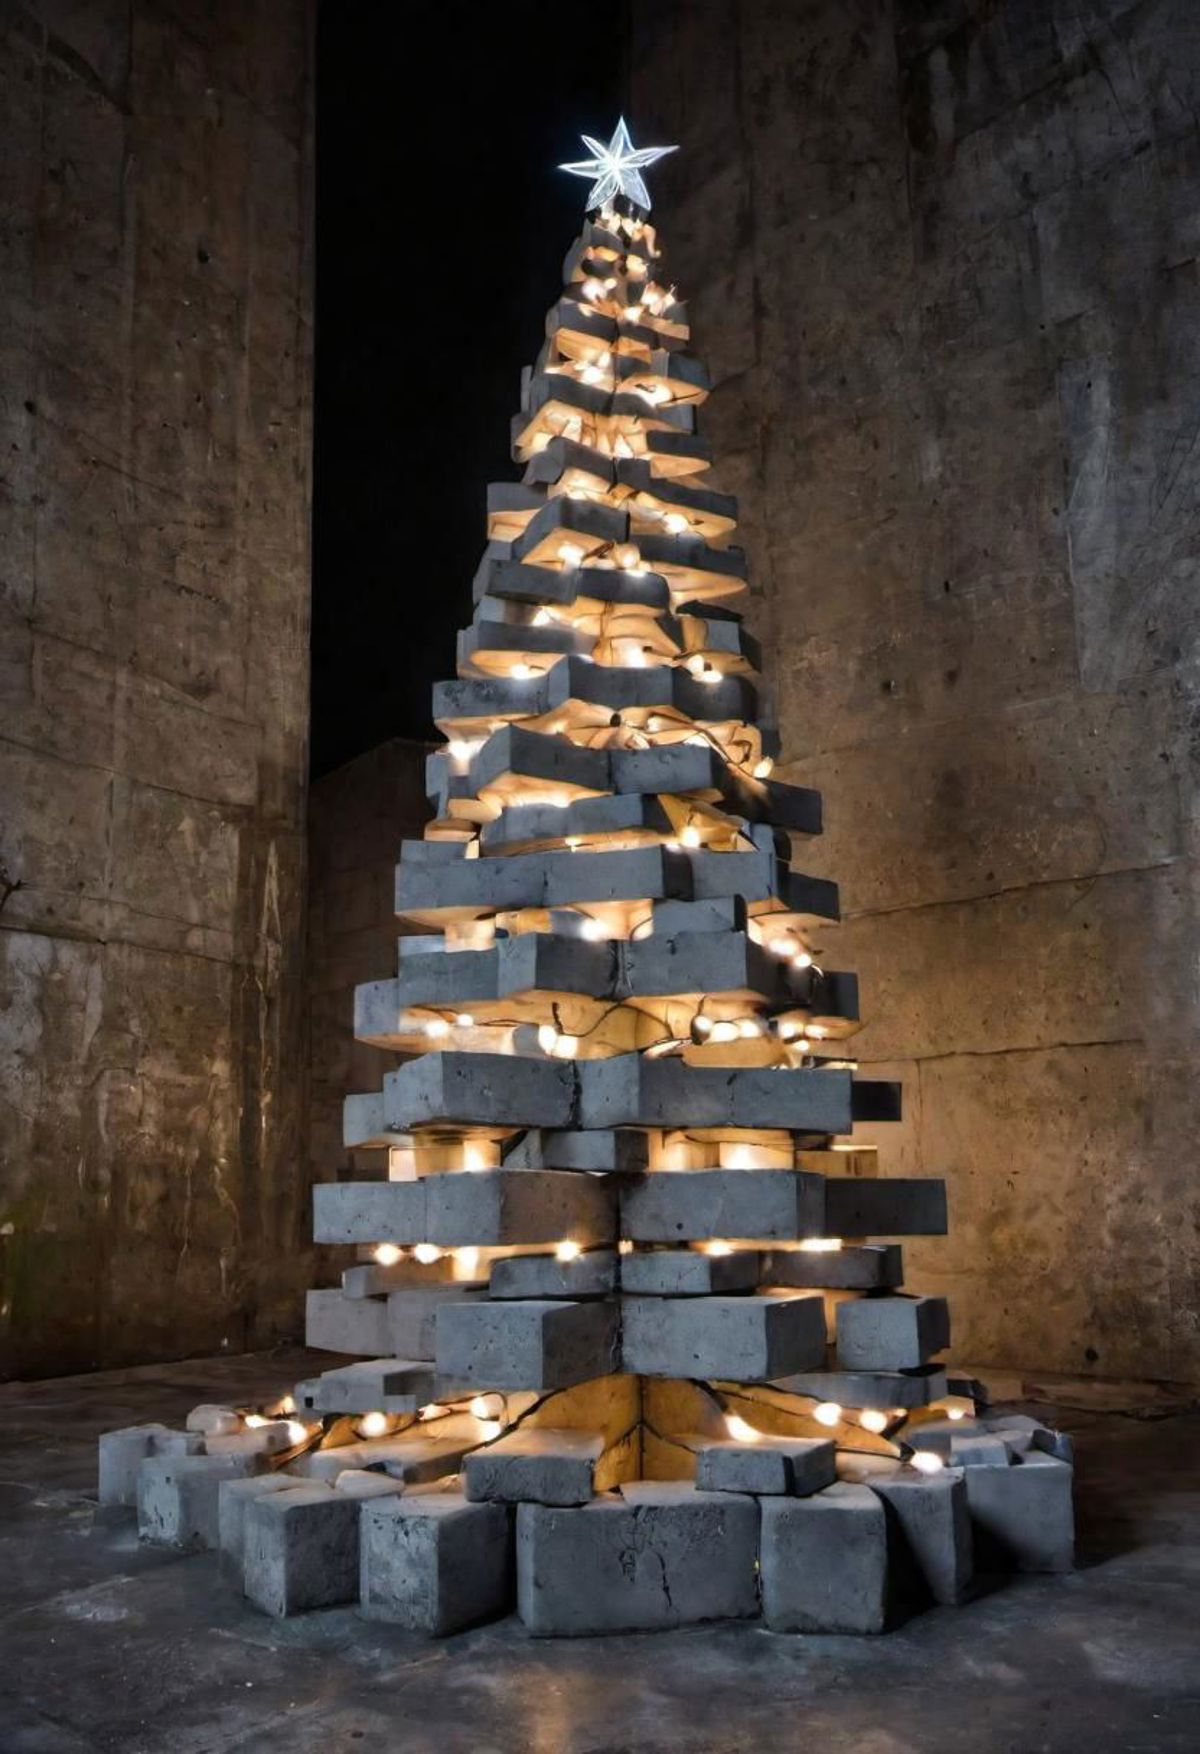 A Christmas Tree Made of Concrete Blocks